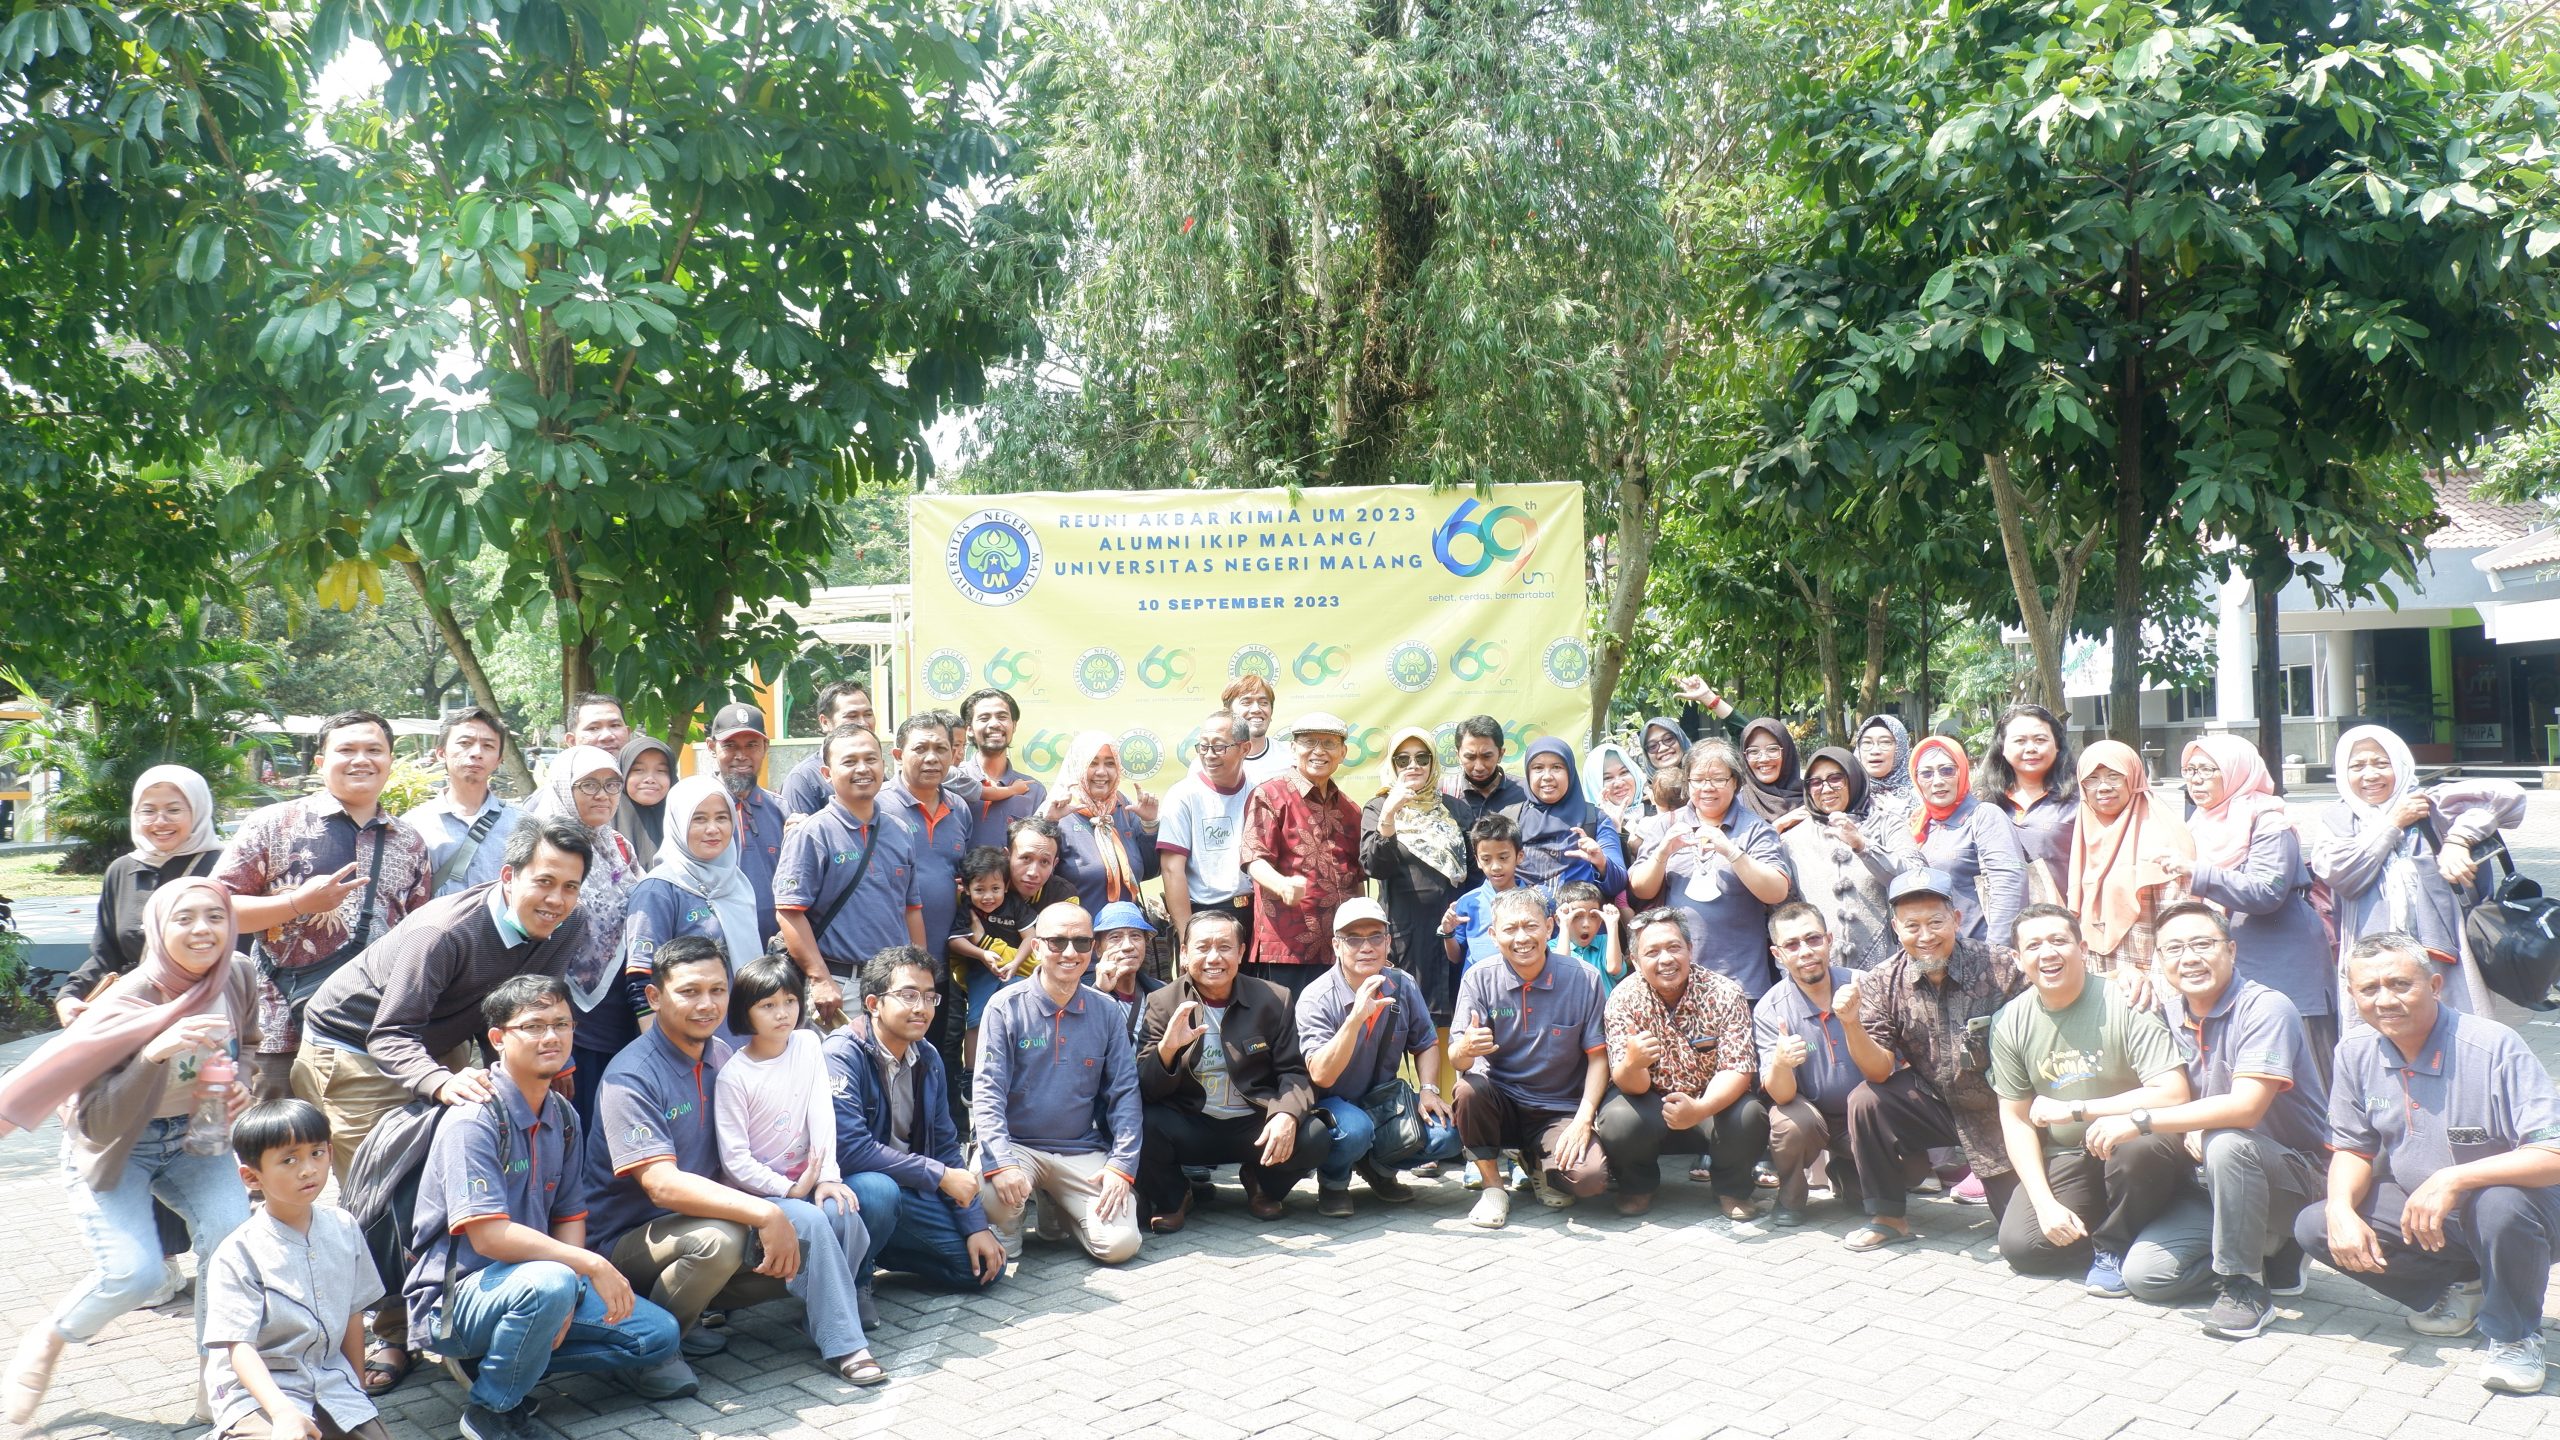 Reuni Akbar 2023 Departemen Kimia Universitas Negeri Malang: Merayakan Jejak Kepemimpinan dan Prestasi Gemilang